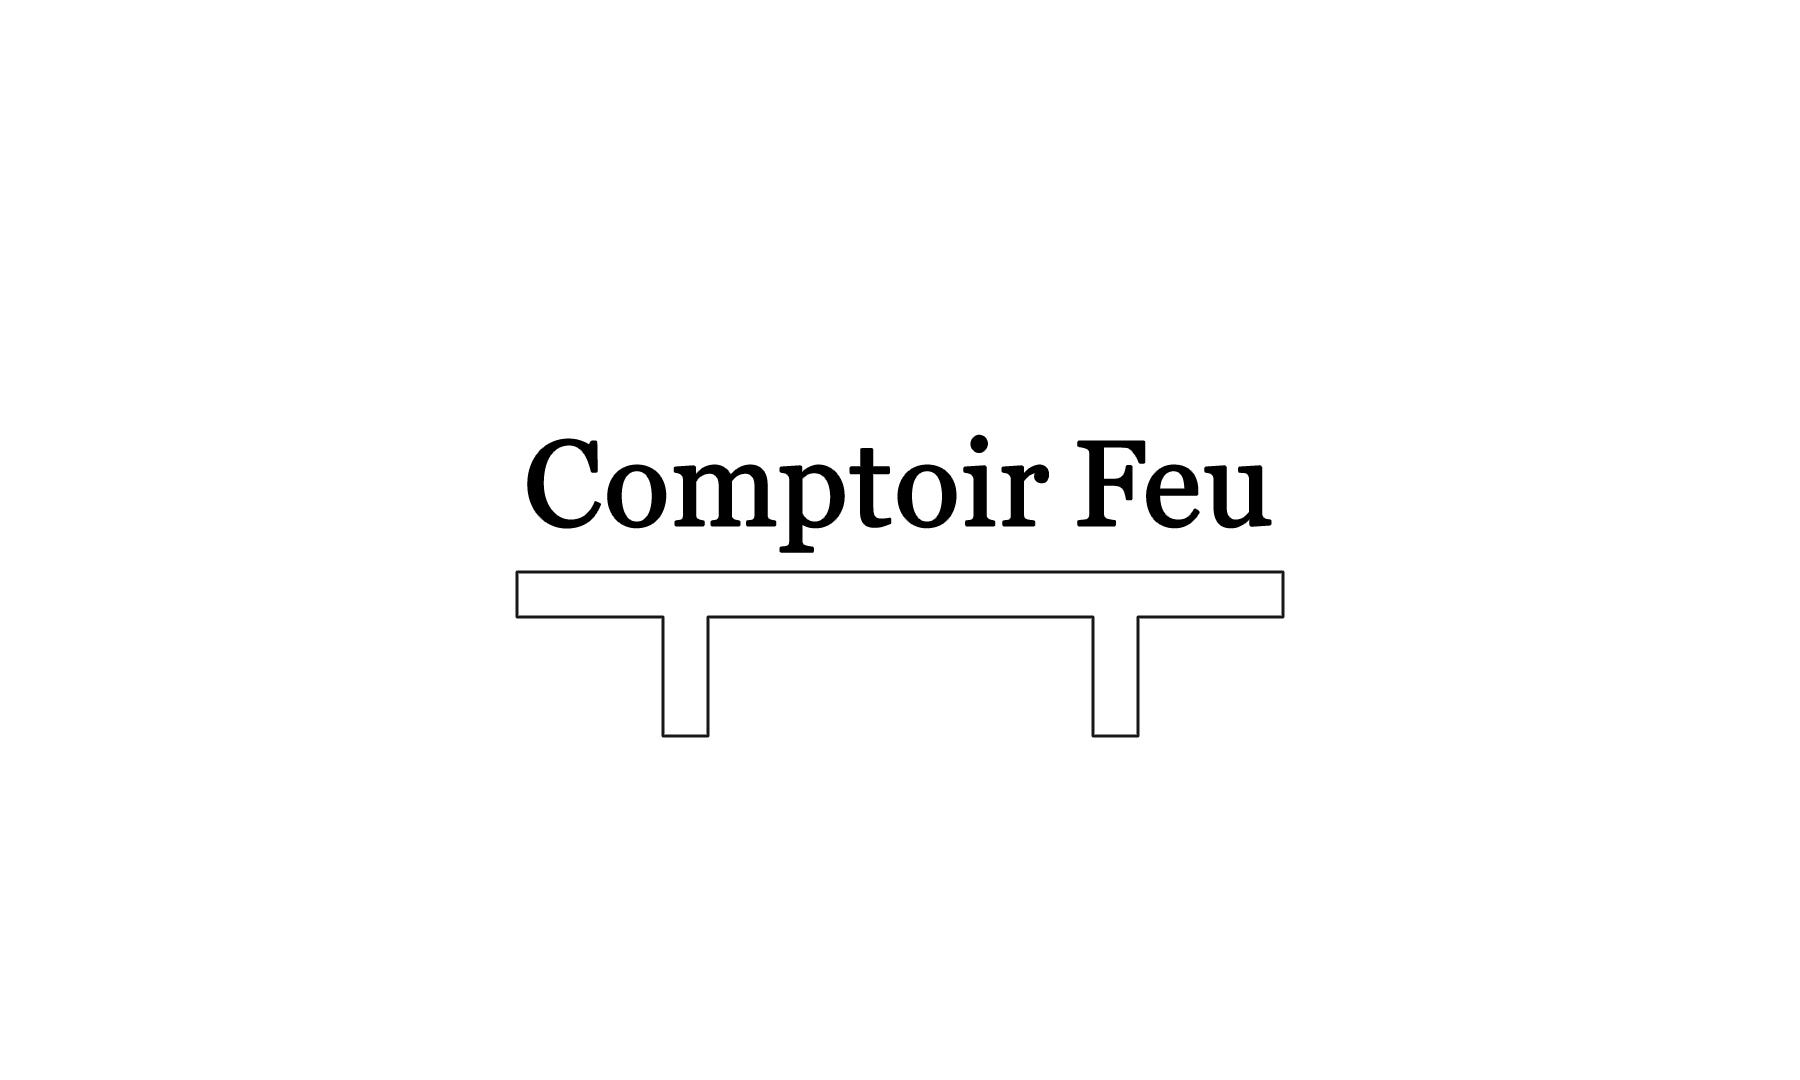 Comptoir Feu [special site] ( Takeaway )'s image